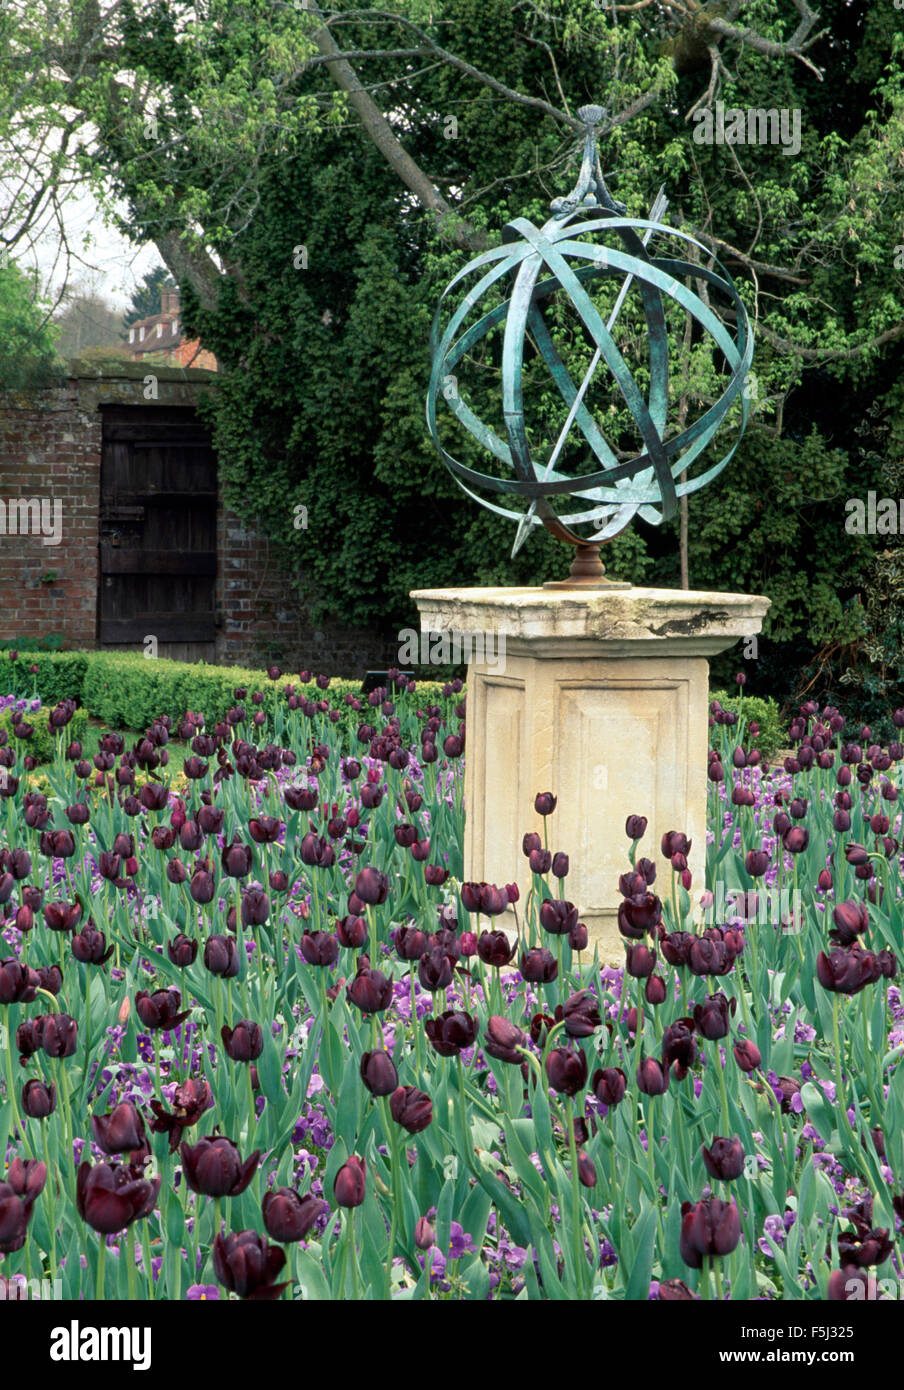 Grand socle en pierre sur l'armillaire en bordure de 'Reine de la nuit' tulipes dans un pays vaste jardin au printemps Banque D'Images